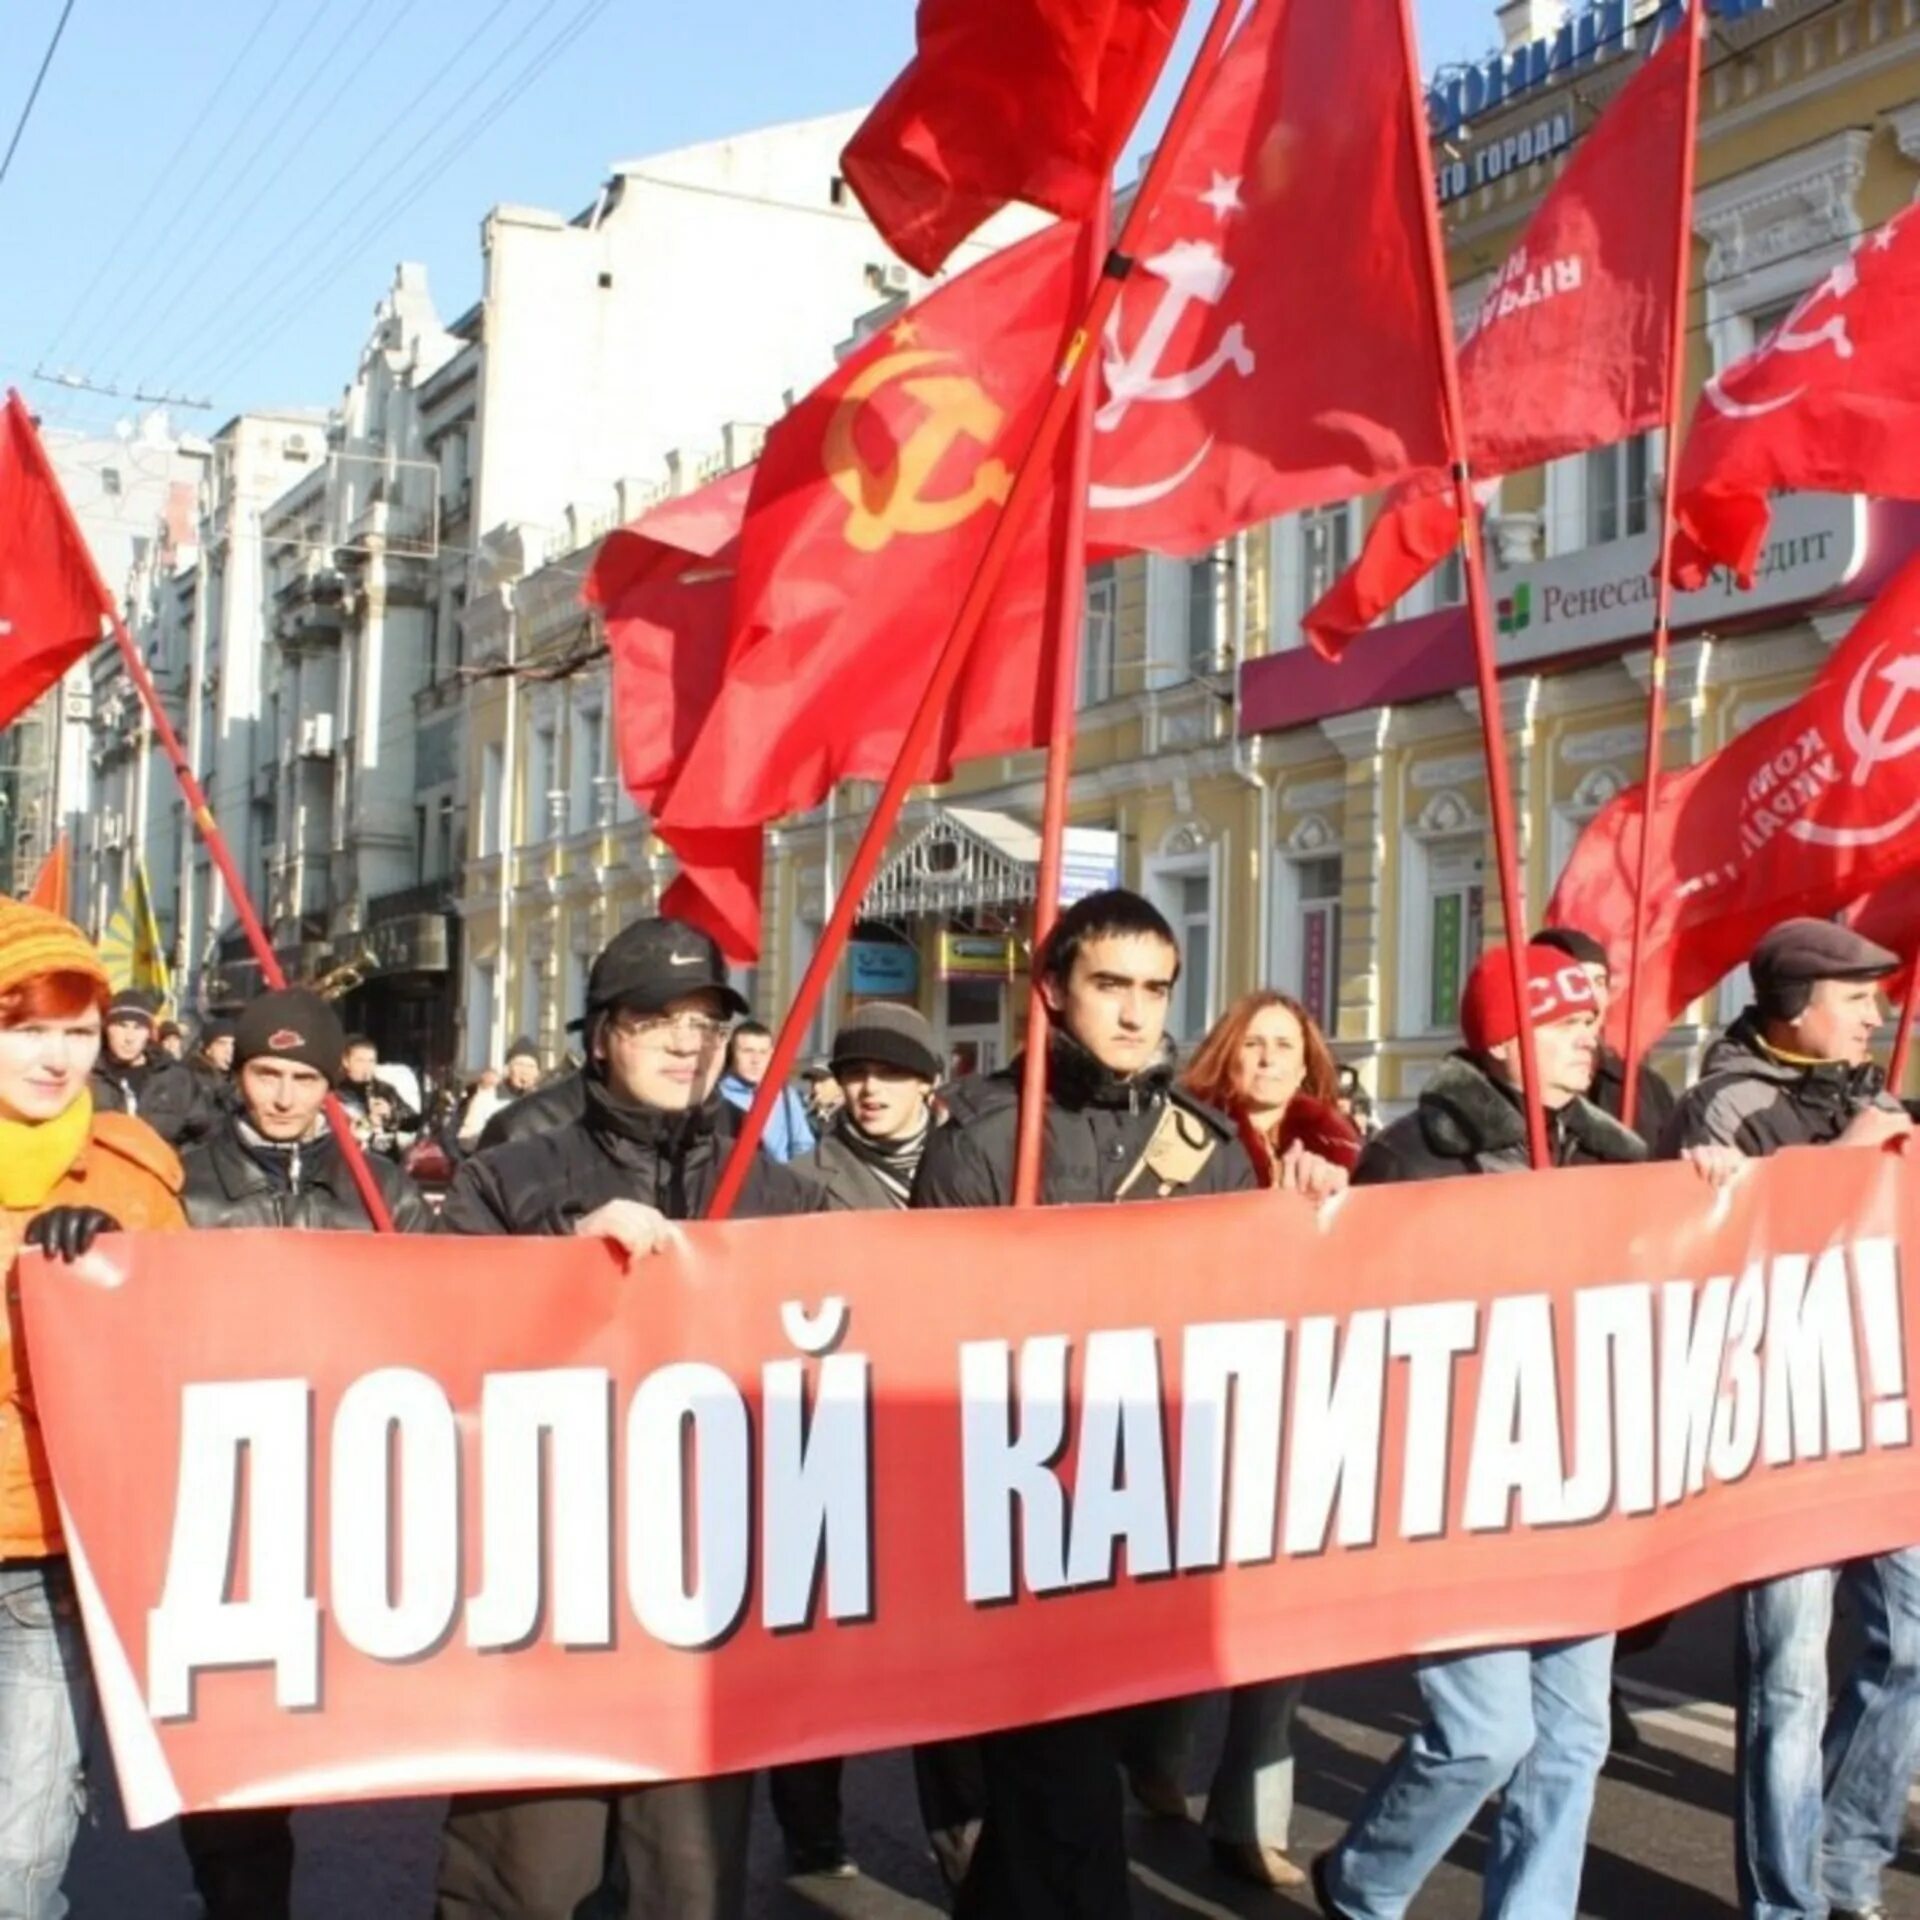 Долой социализм. Лозунги против коммунистов. День международной солидарности трудящихся. Современный социализм.